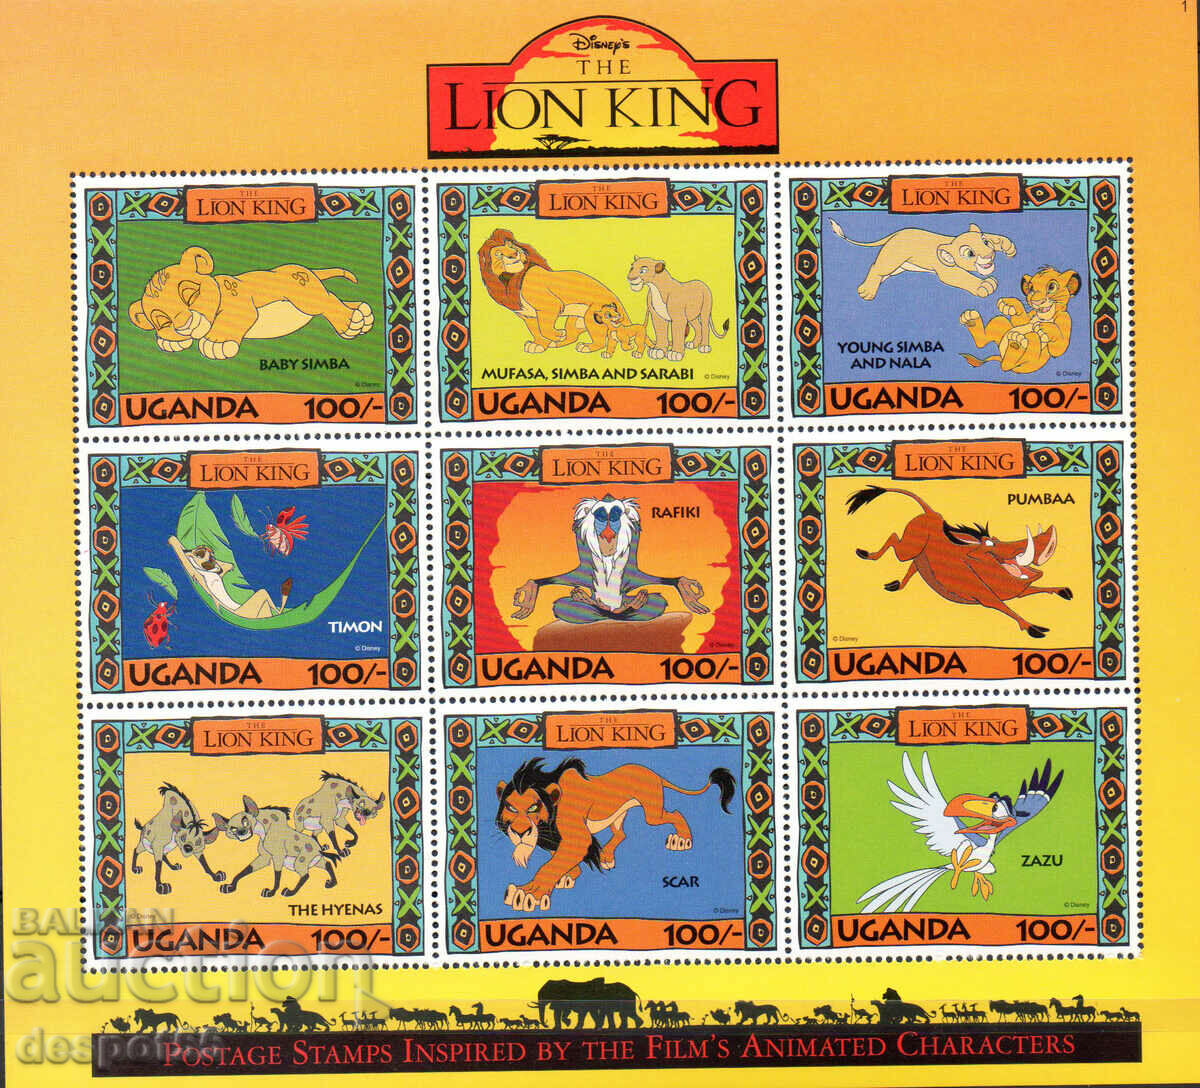 1994. Ουγκάντα. Κινουμένων σχεδίων. Η ταινία της Walt Disney "The Lion King". ΟΙΚΟΔΟΜΙΚΟ ΤΕΤΡΑΓΩΝΟ.